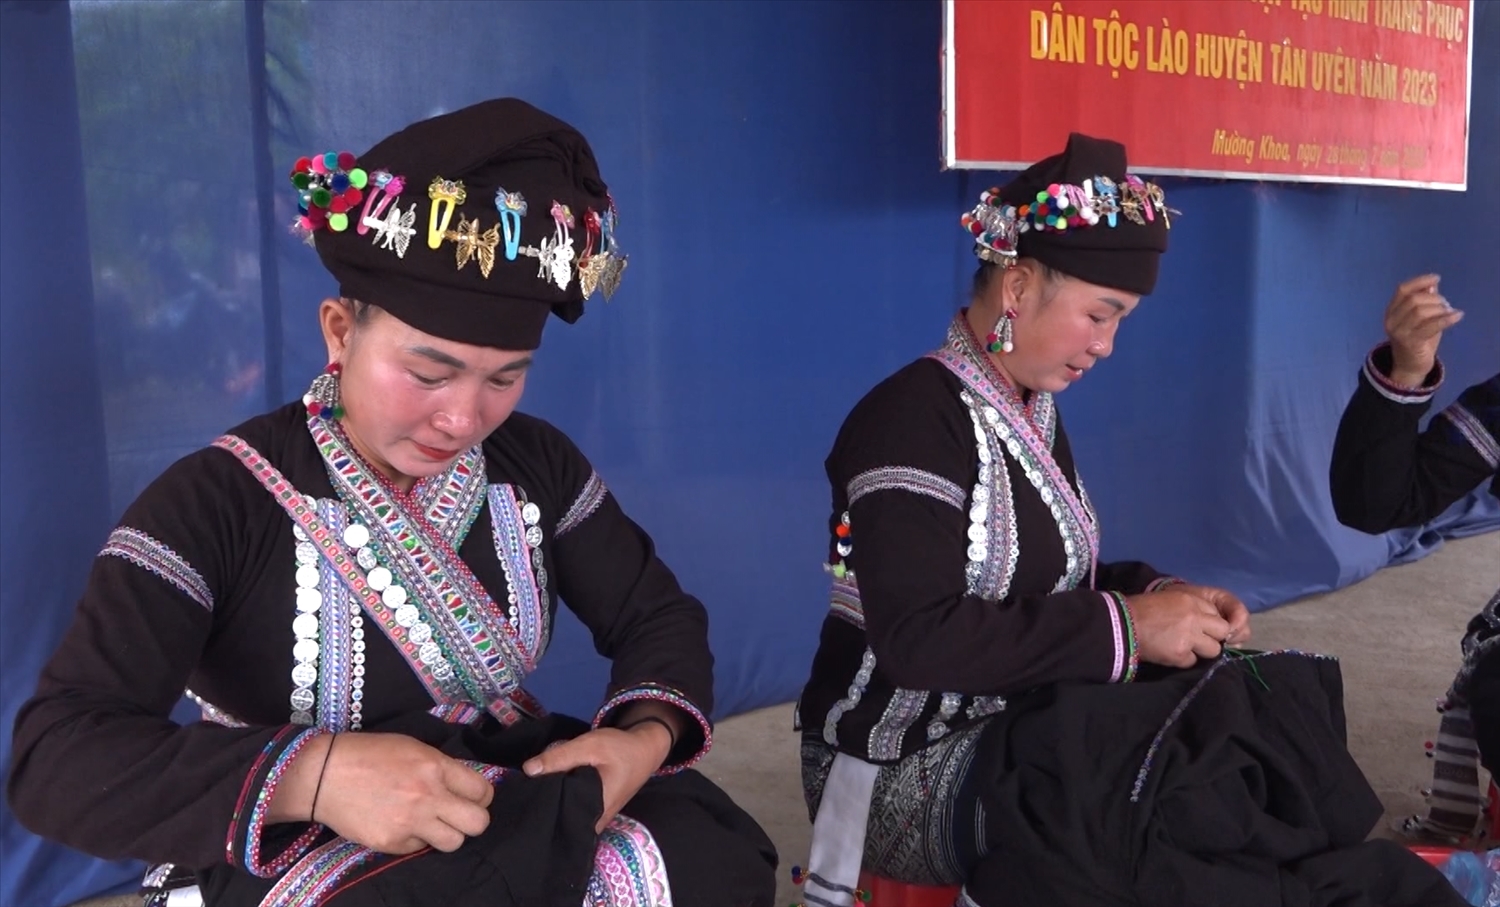 Trang phục của người Lào ở Tân Uyên có màu đen, chân váy được dệt nhiều hoa văn màu trắng, xanh và đỏ. Điểm nhấn là những đường may và thêu tay cầu kỳ